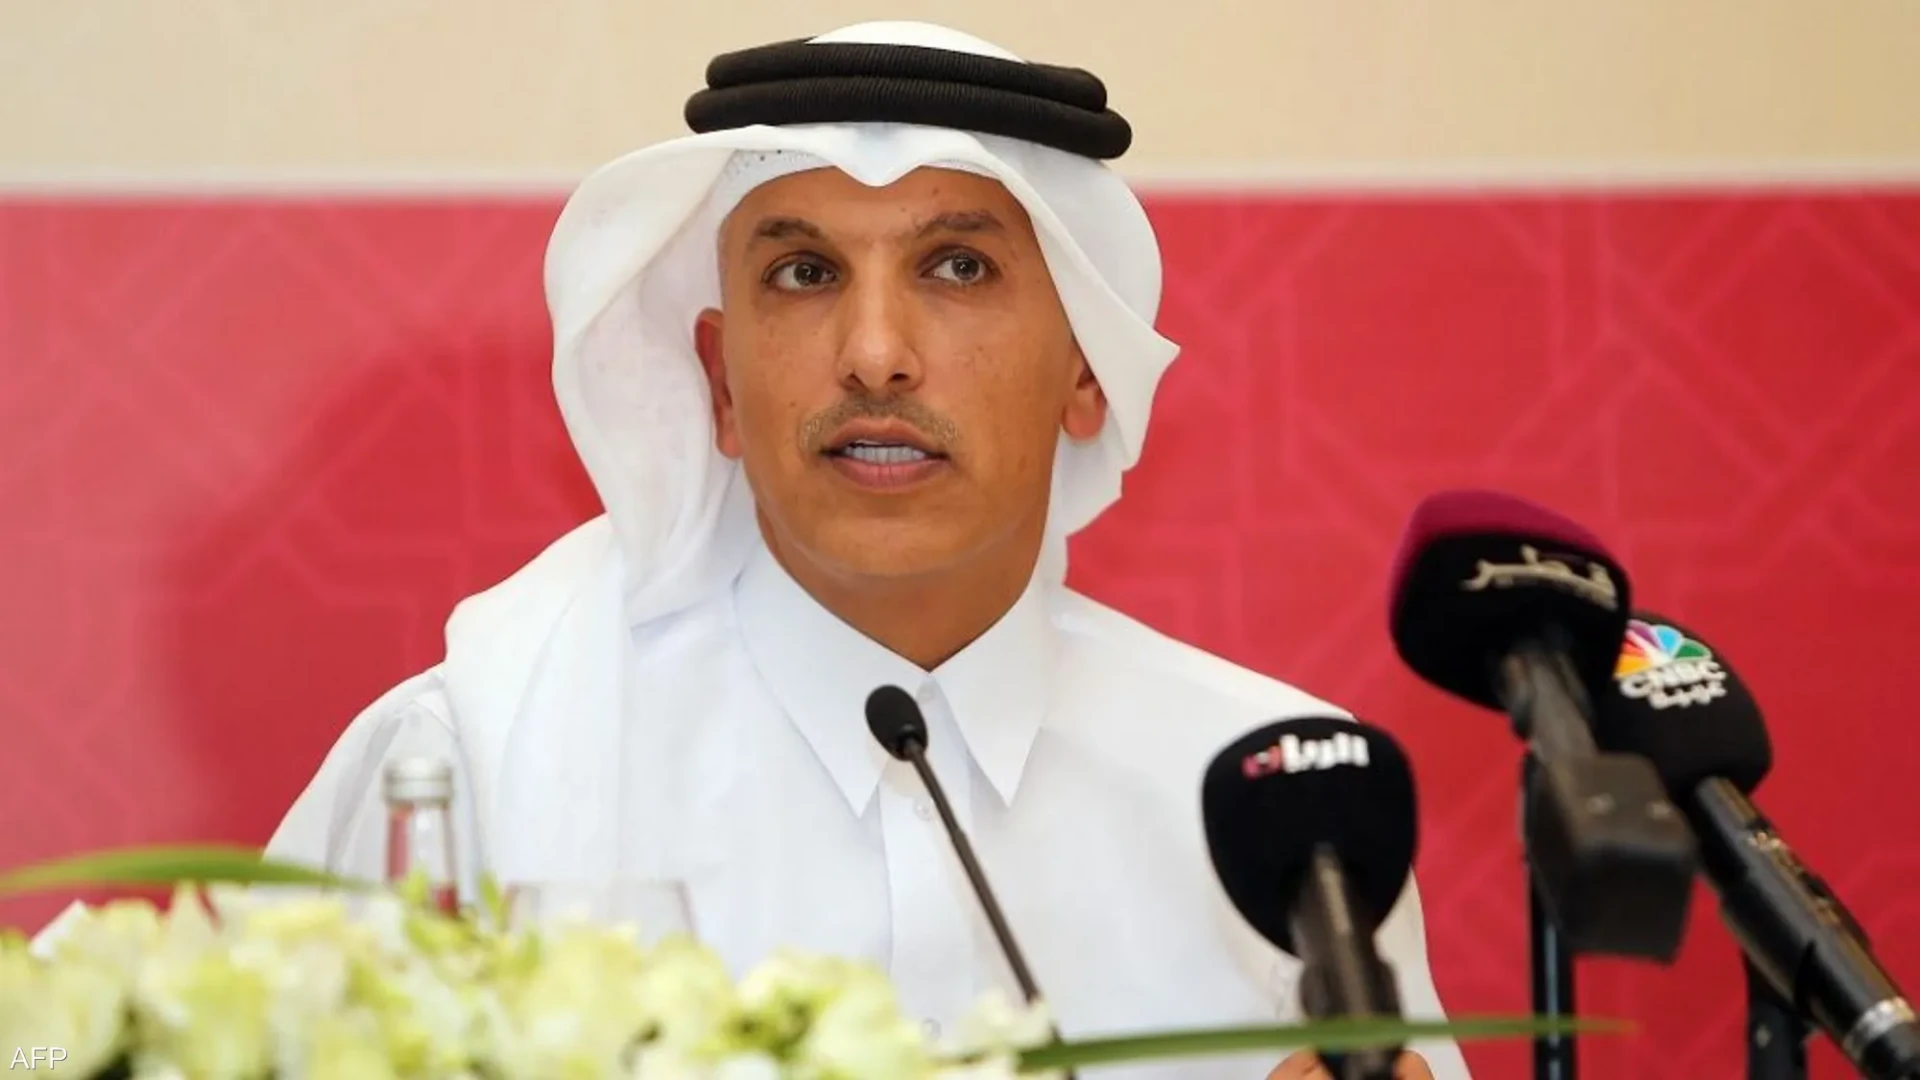 السجن 20 عاما لوزير قطري وتغريمه بأكثر من 16 مليار دولار